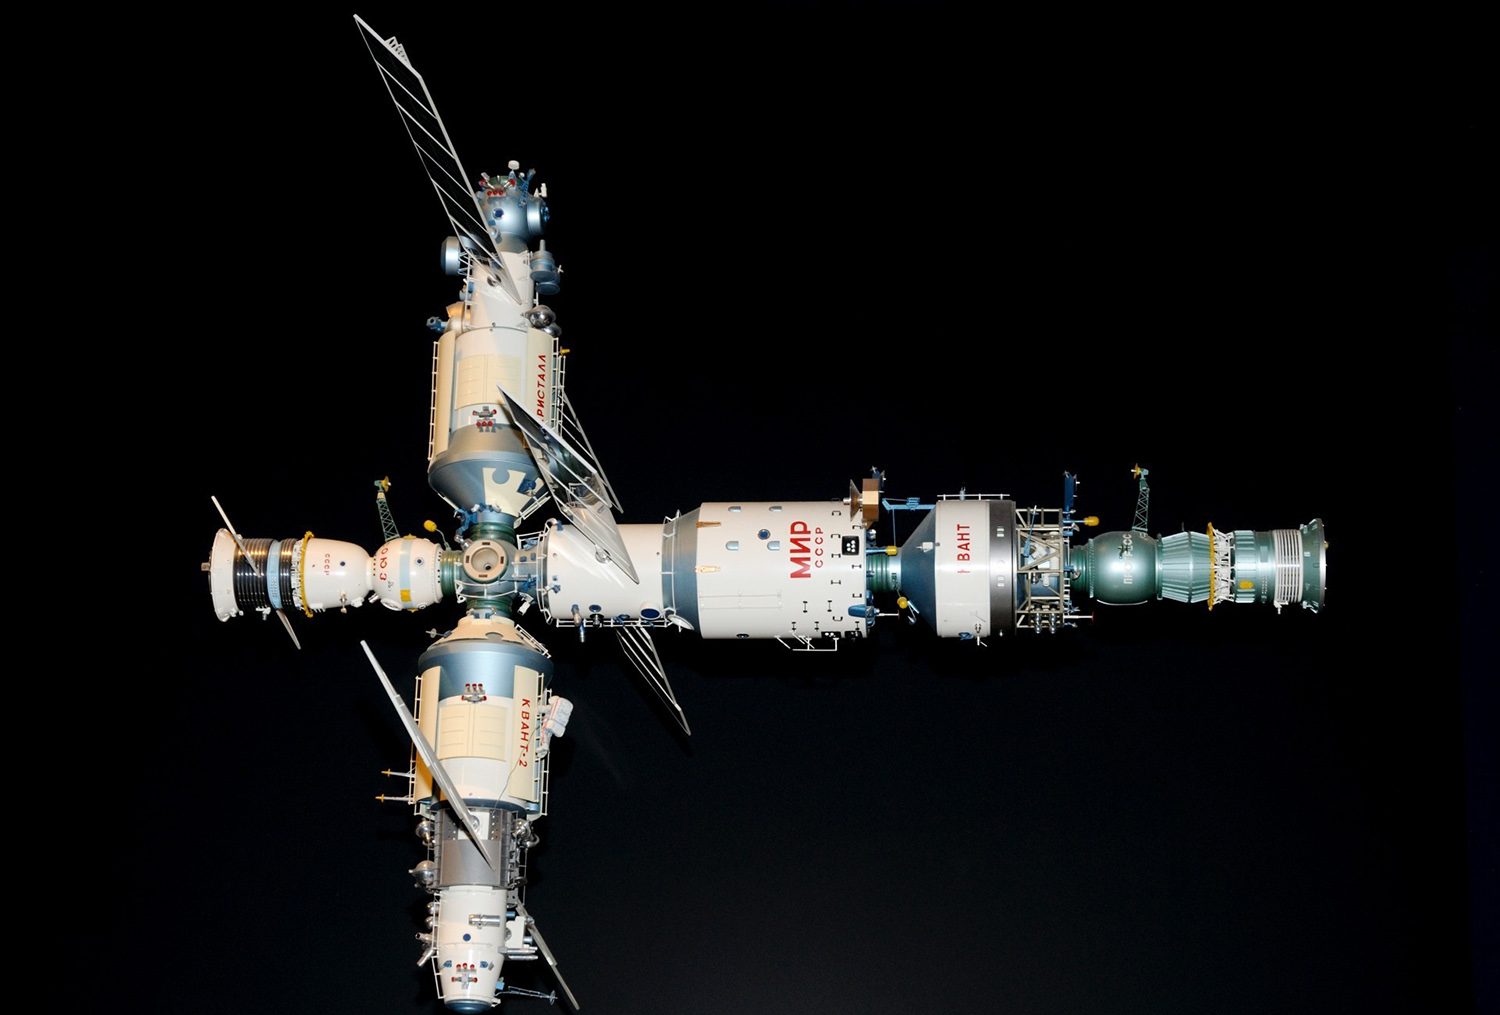 В музее космонавтики находится макет бытового отсека космической станции. Отметь к какой станции он относится